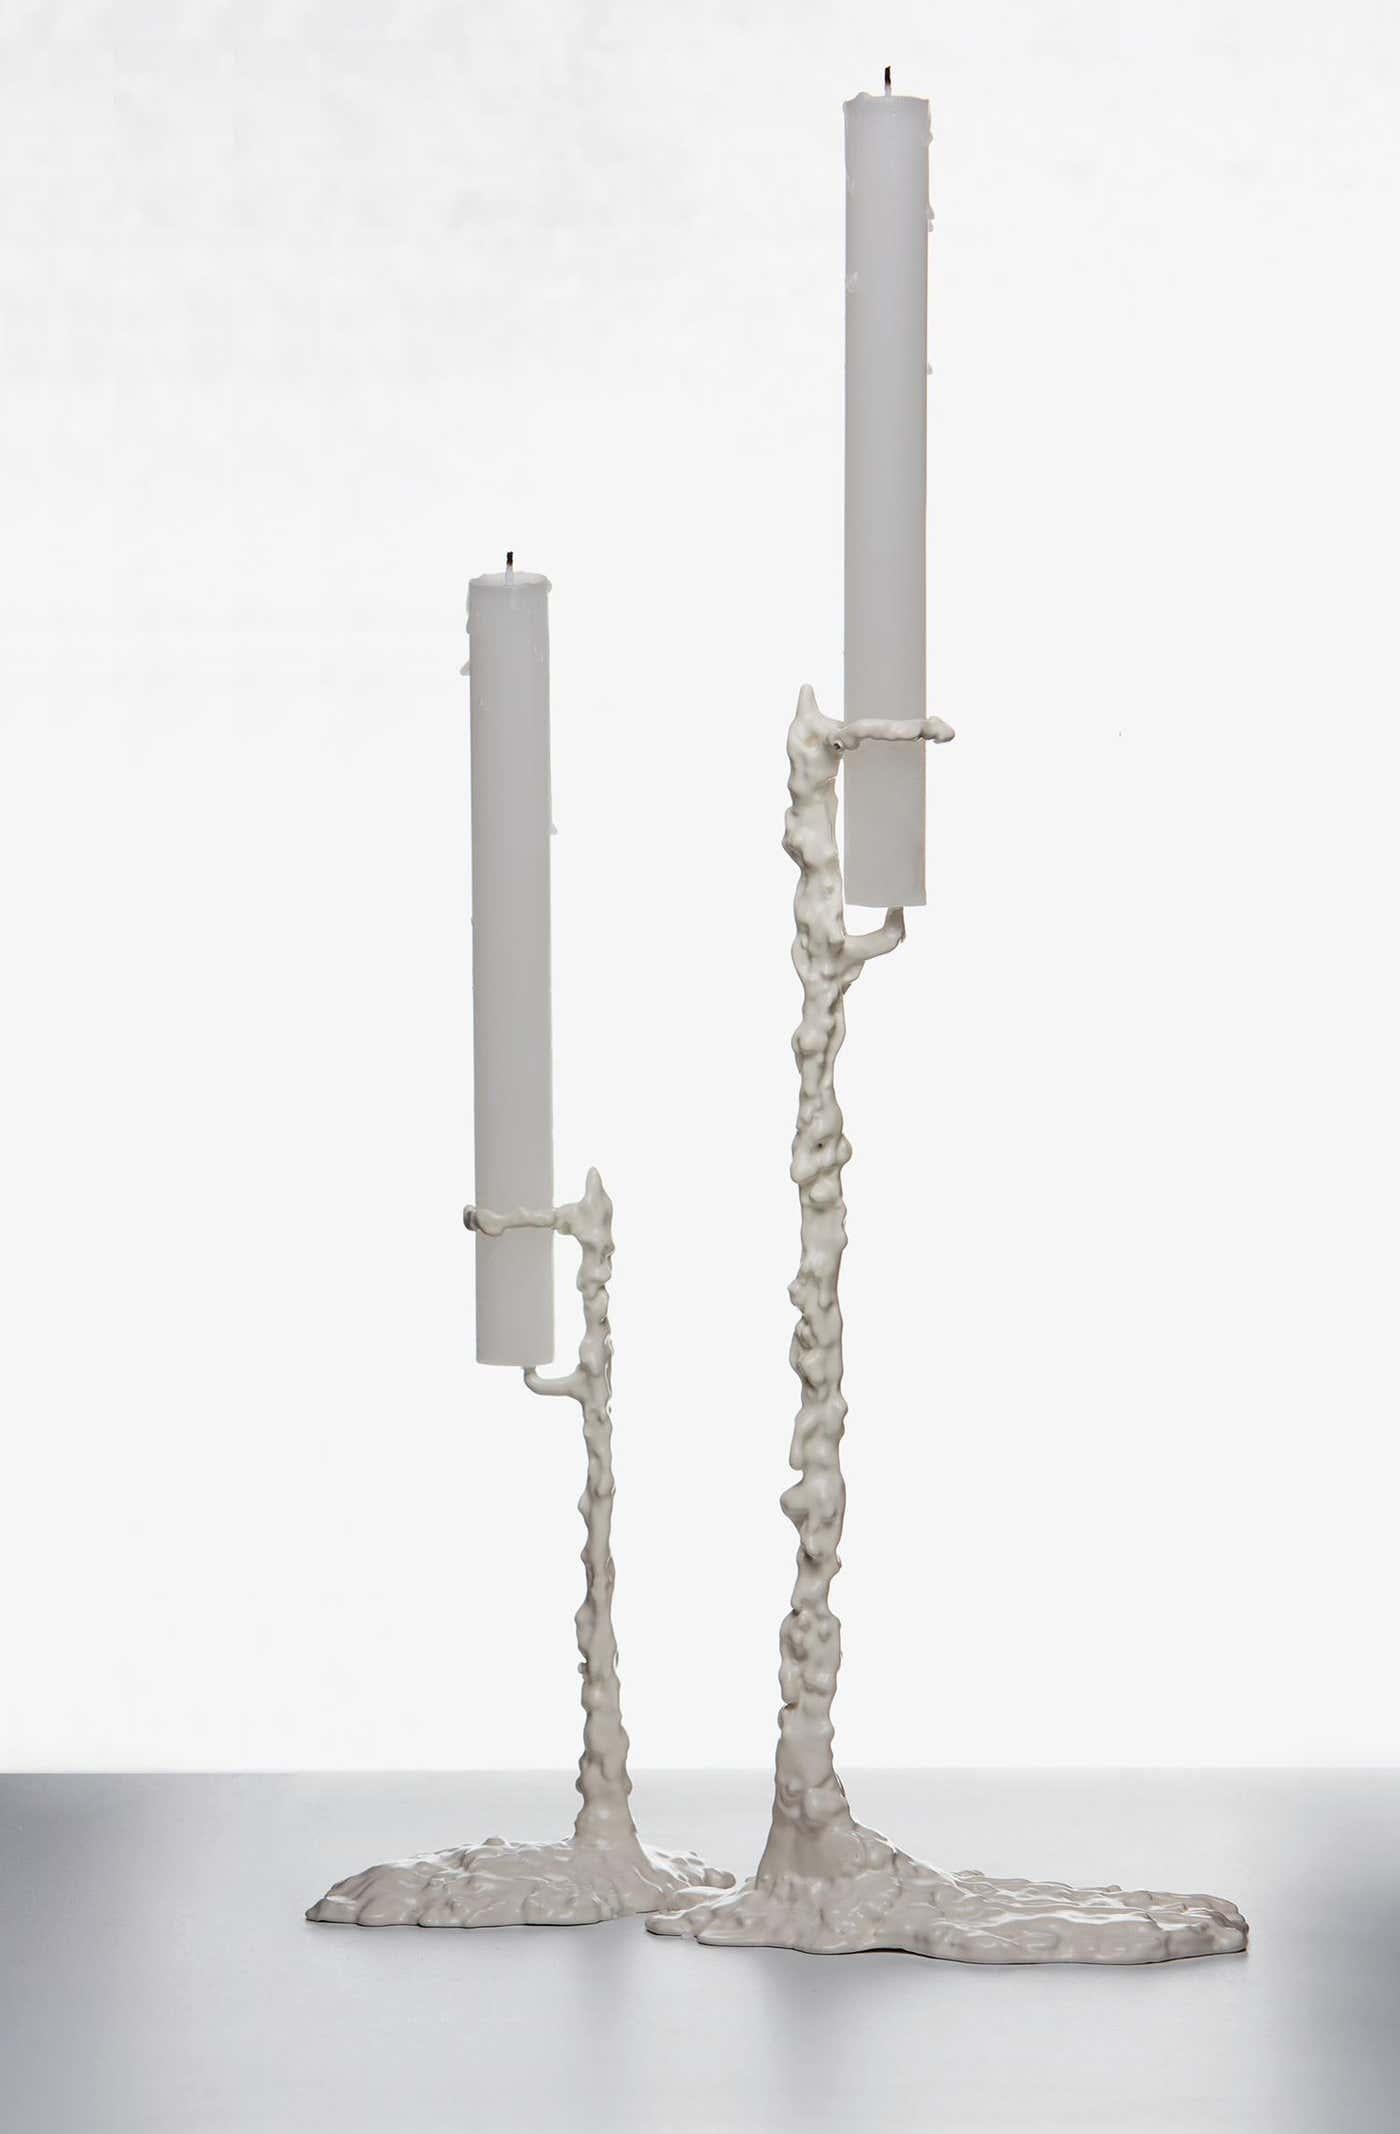 Alberto Paar Kerzenständer entworfen von Oscar Tusquets.
Hergestellt von Bd Barcelona (Spanien).

Kerzenhalter aus Messingguss.

Abmessungen: 
Hoch: D 8 x B 12 x H 28 cm. 
Niedrig: T 6 x B 10 x H 20 cm.

Alberto, entworfen von Oscar Tusquets für BD